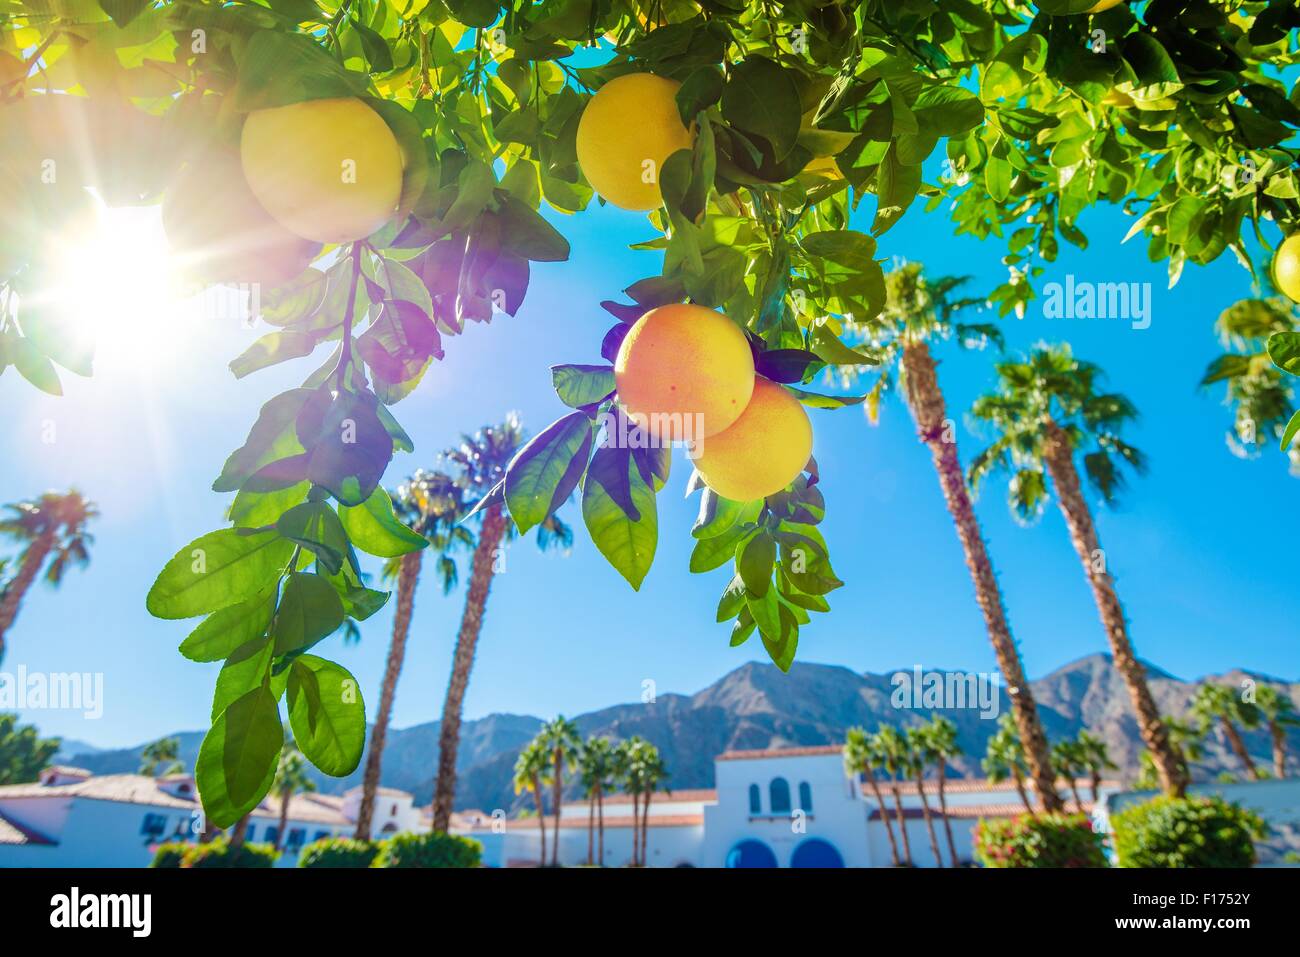 Benvenuti in California. La soleggiata California paesaggio, palme e alberi di arancio. Foto Stock